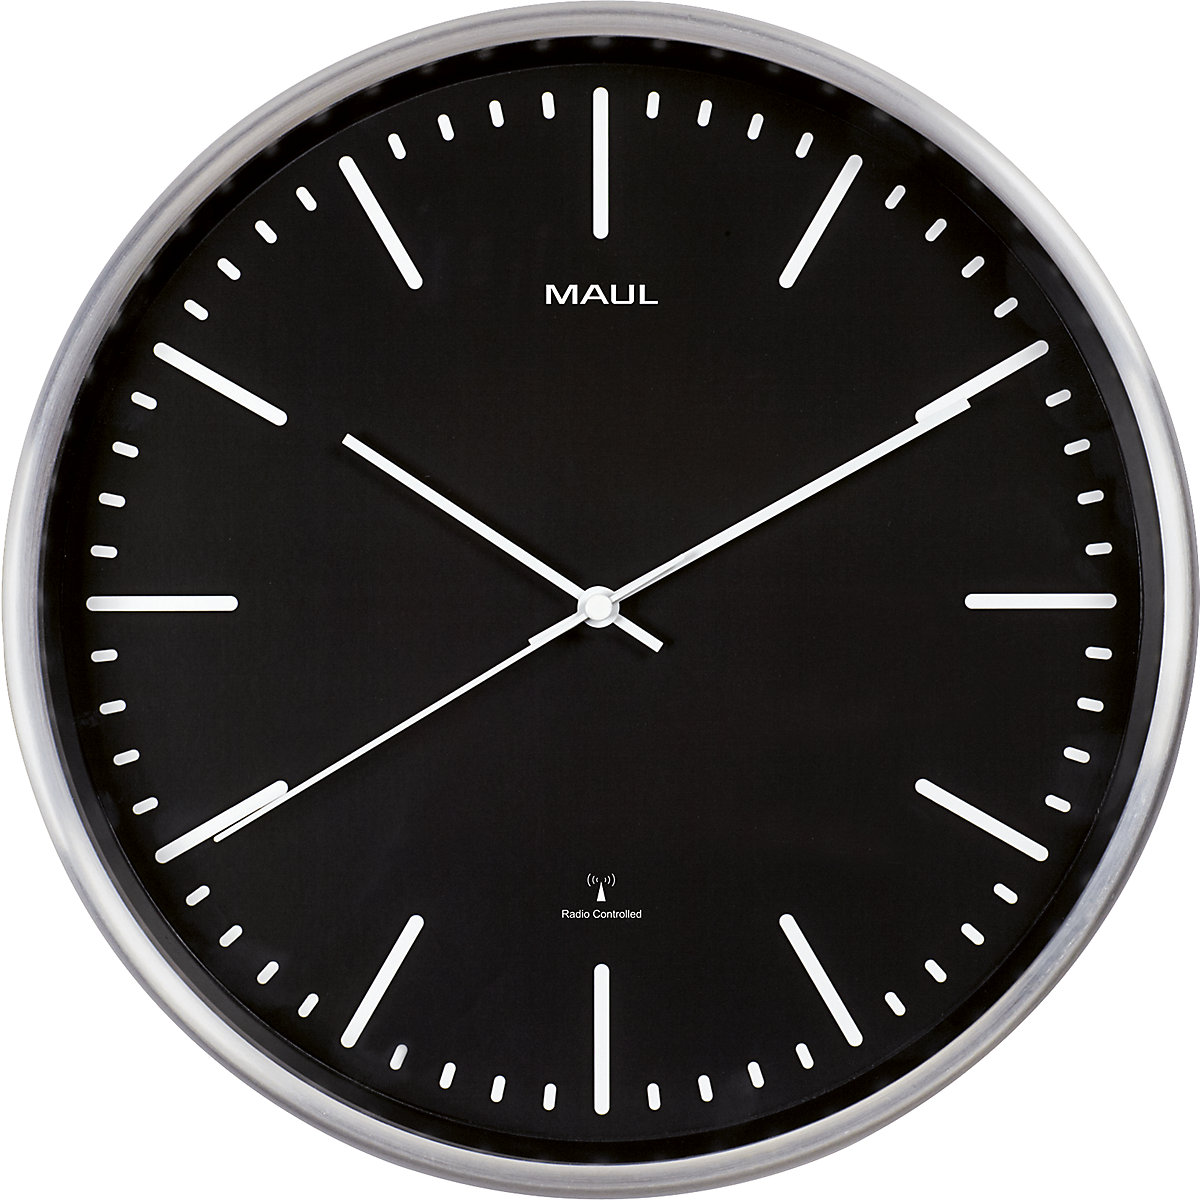 MAULfly wall clock – MAUL